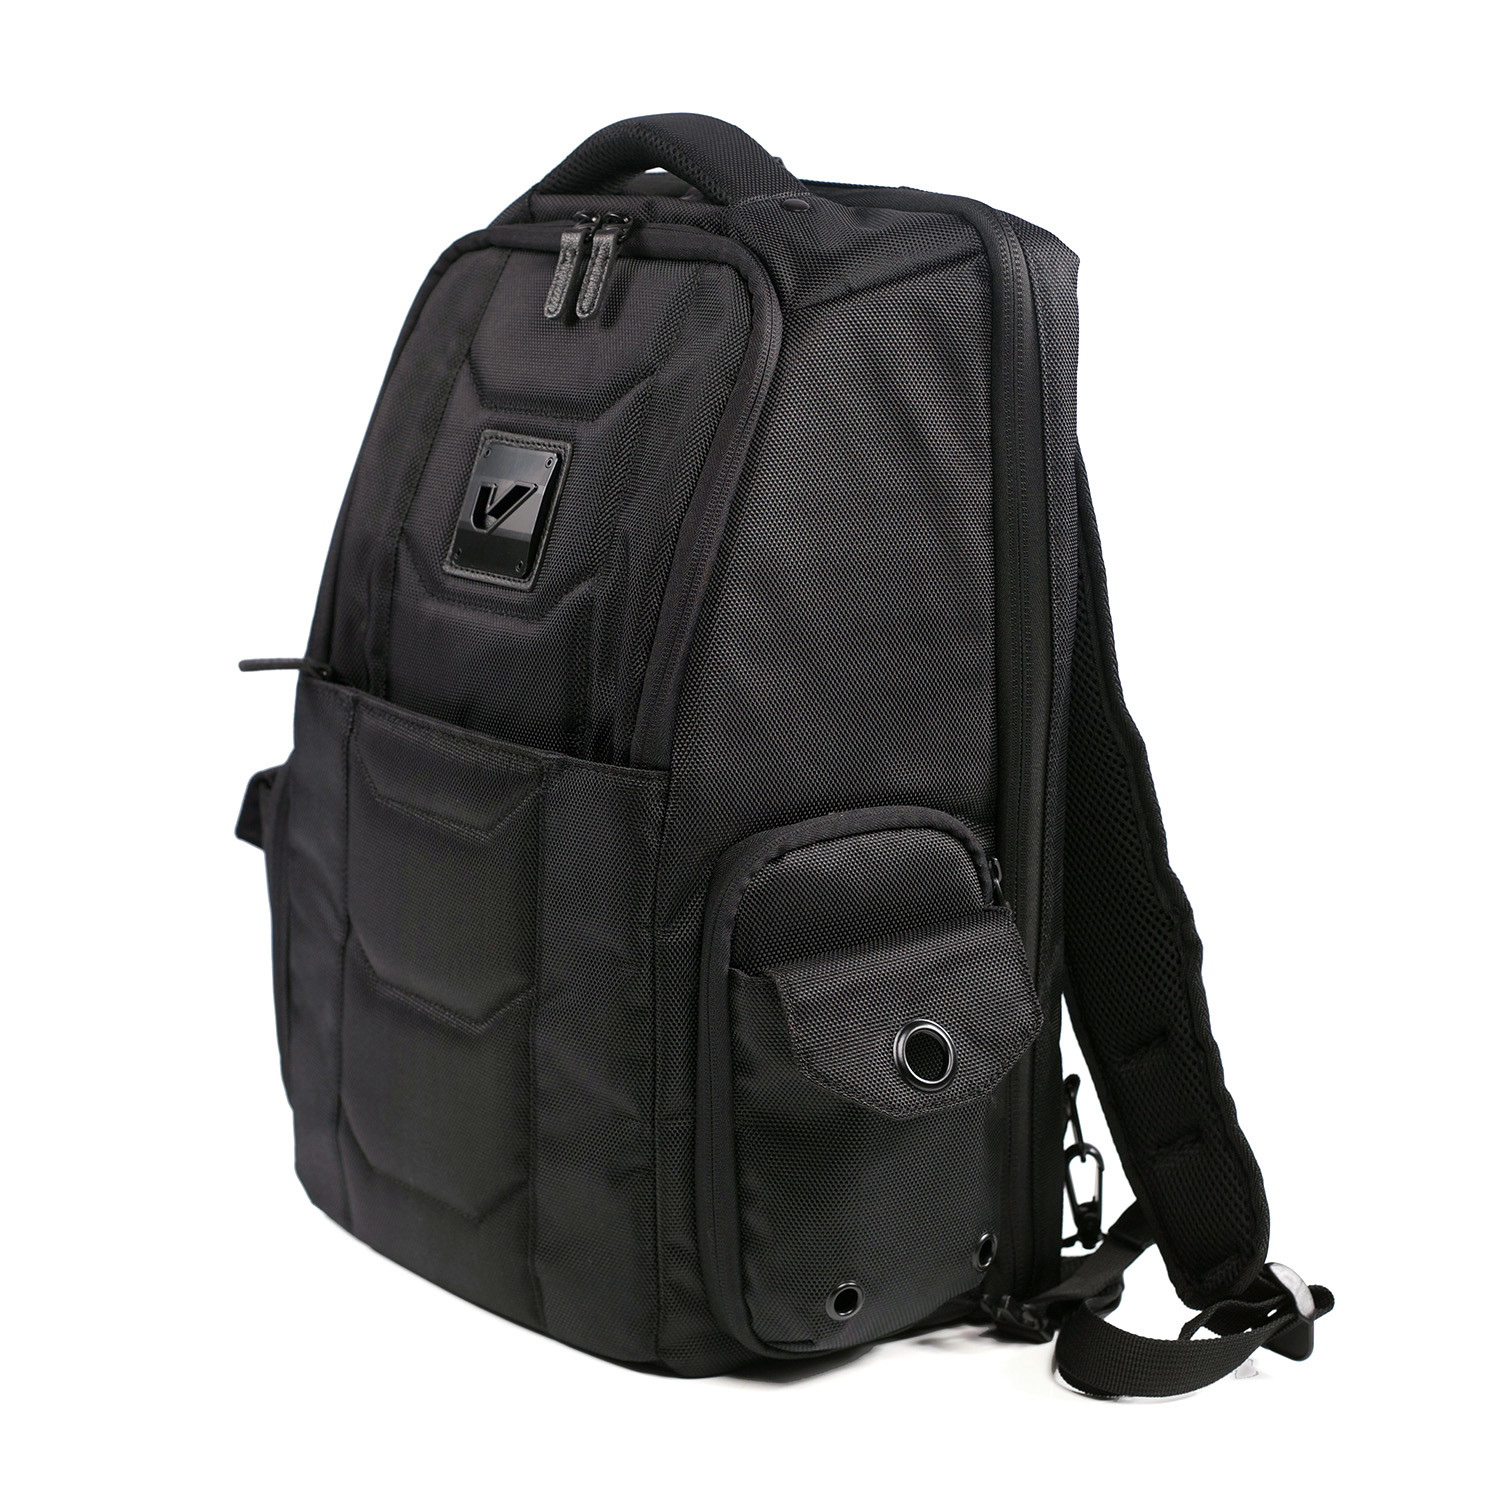 Elite Traveler Backpack - Gruv Gear - Touch of Modern